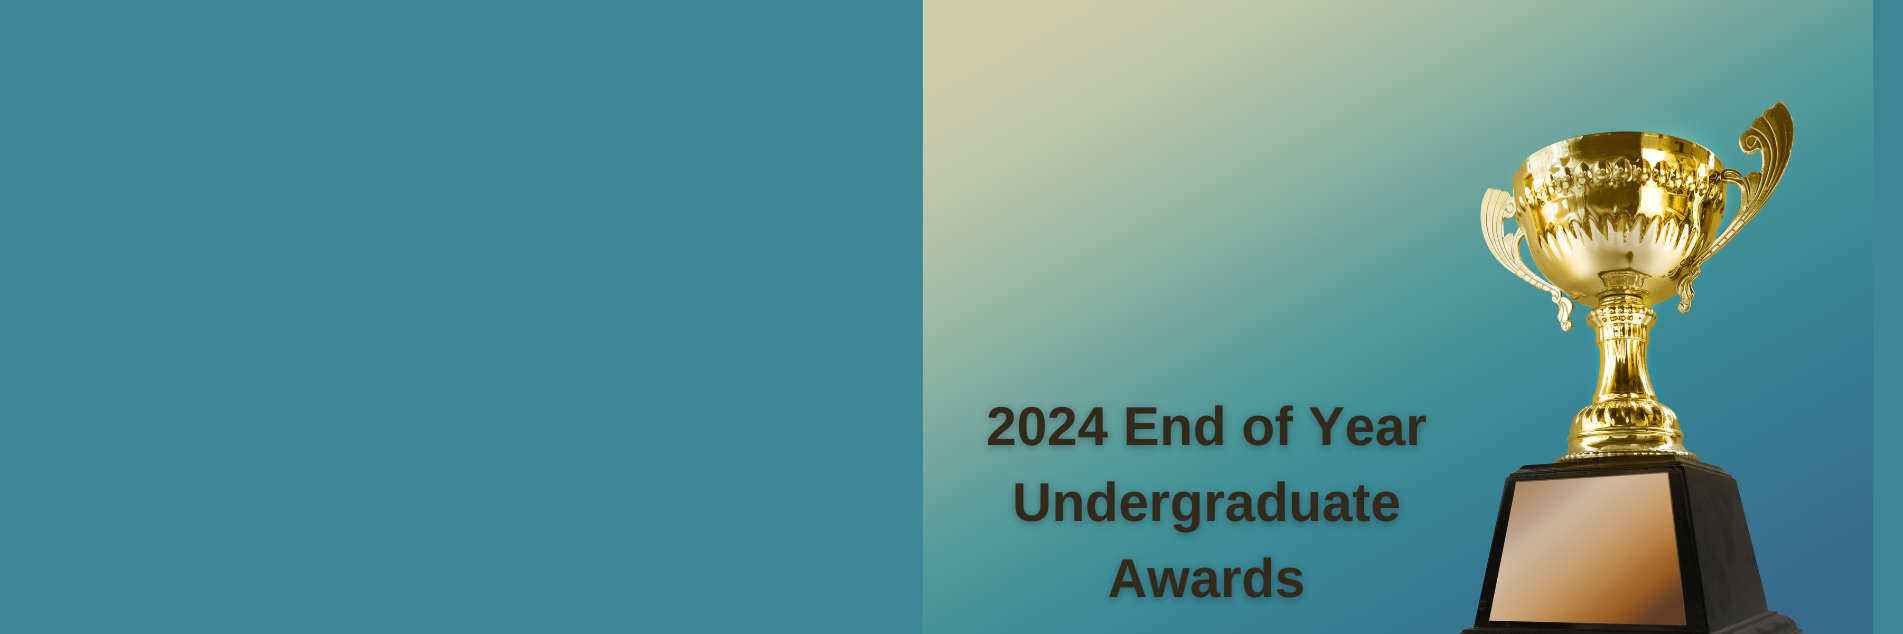 2024 UG awards